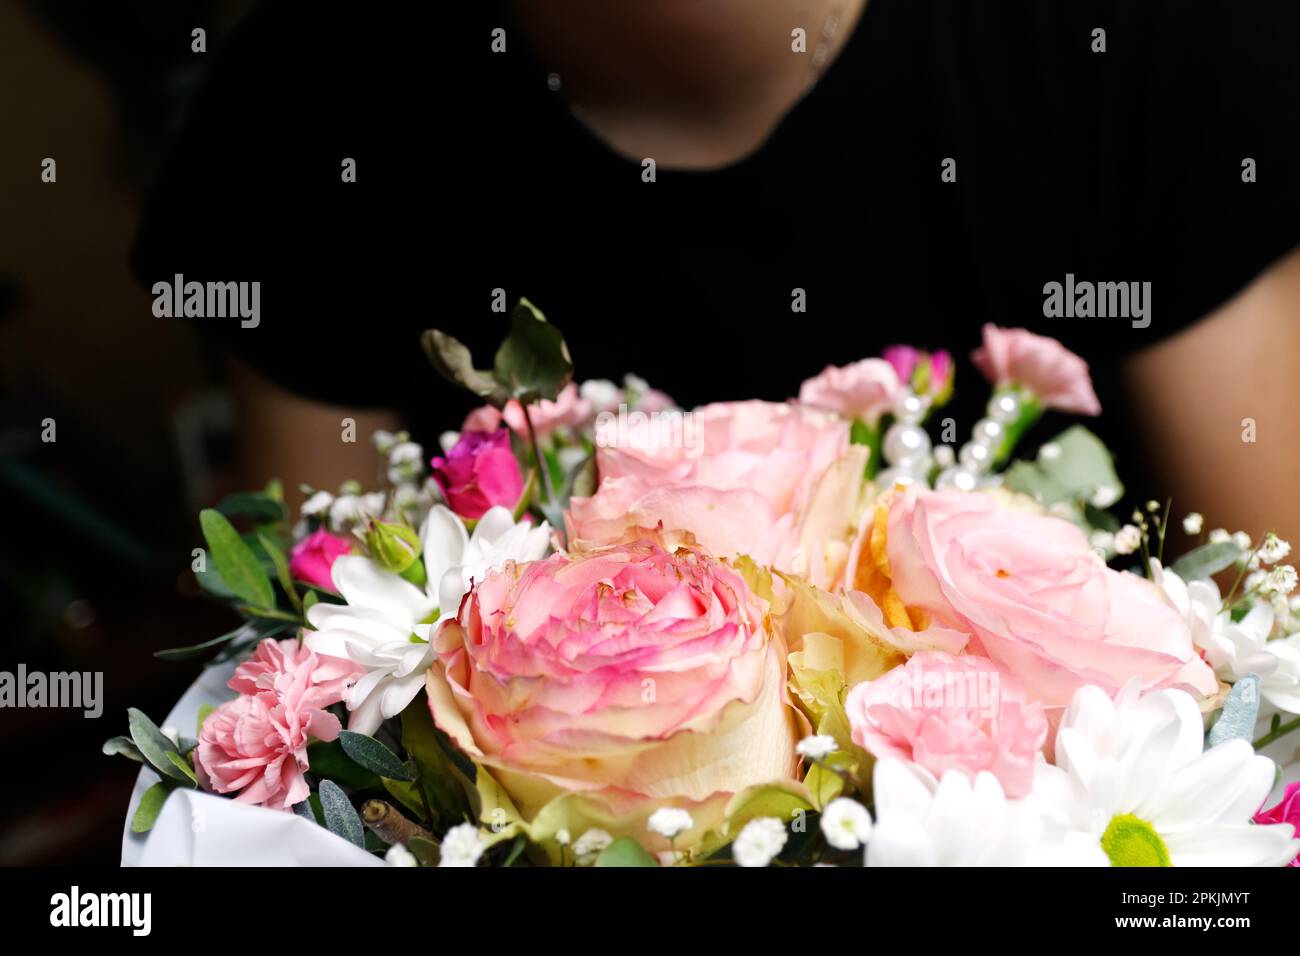 Fleuriste femme tenant un beau bouquet de fleurs aux couleurs rose et vert de roses, pivoine, myrte, feuilles de pistache. Femme présenter bea Banque D'Images